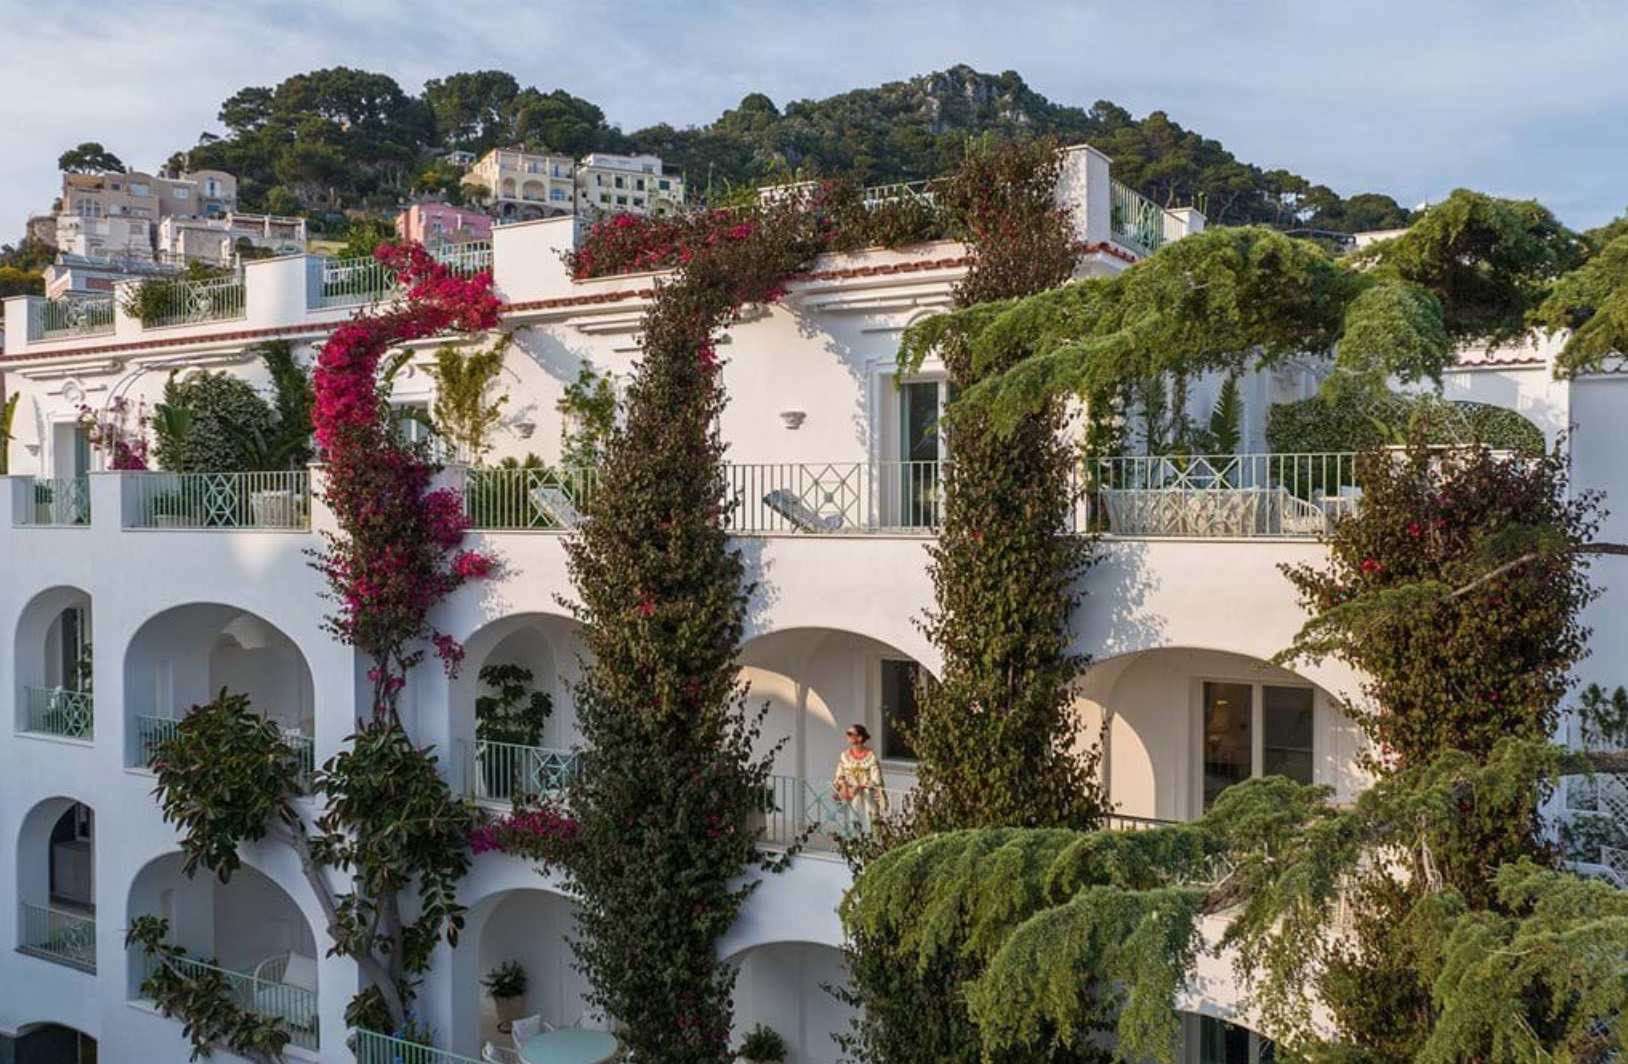 Hotel La Palma in Capri, Italy